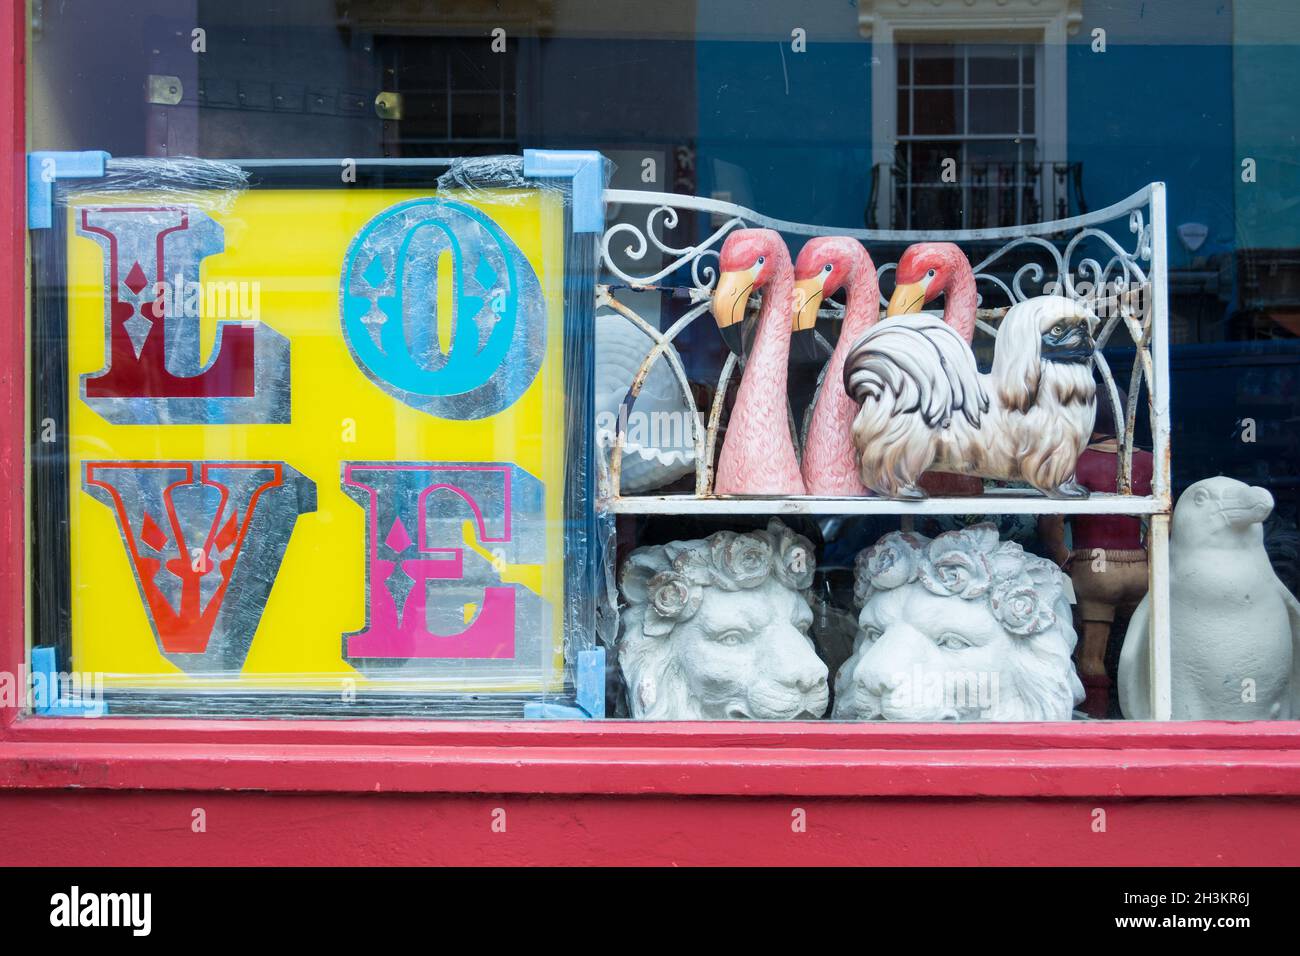 Gros plan de l'enseigne d'amour et des flamants roses dans la boutique d'antiquités d'Alice sur Portobello Road, Kensington, Londres, Angleterre, Royaume-Uni Banque D'Images